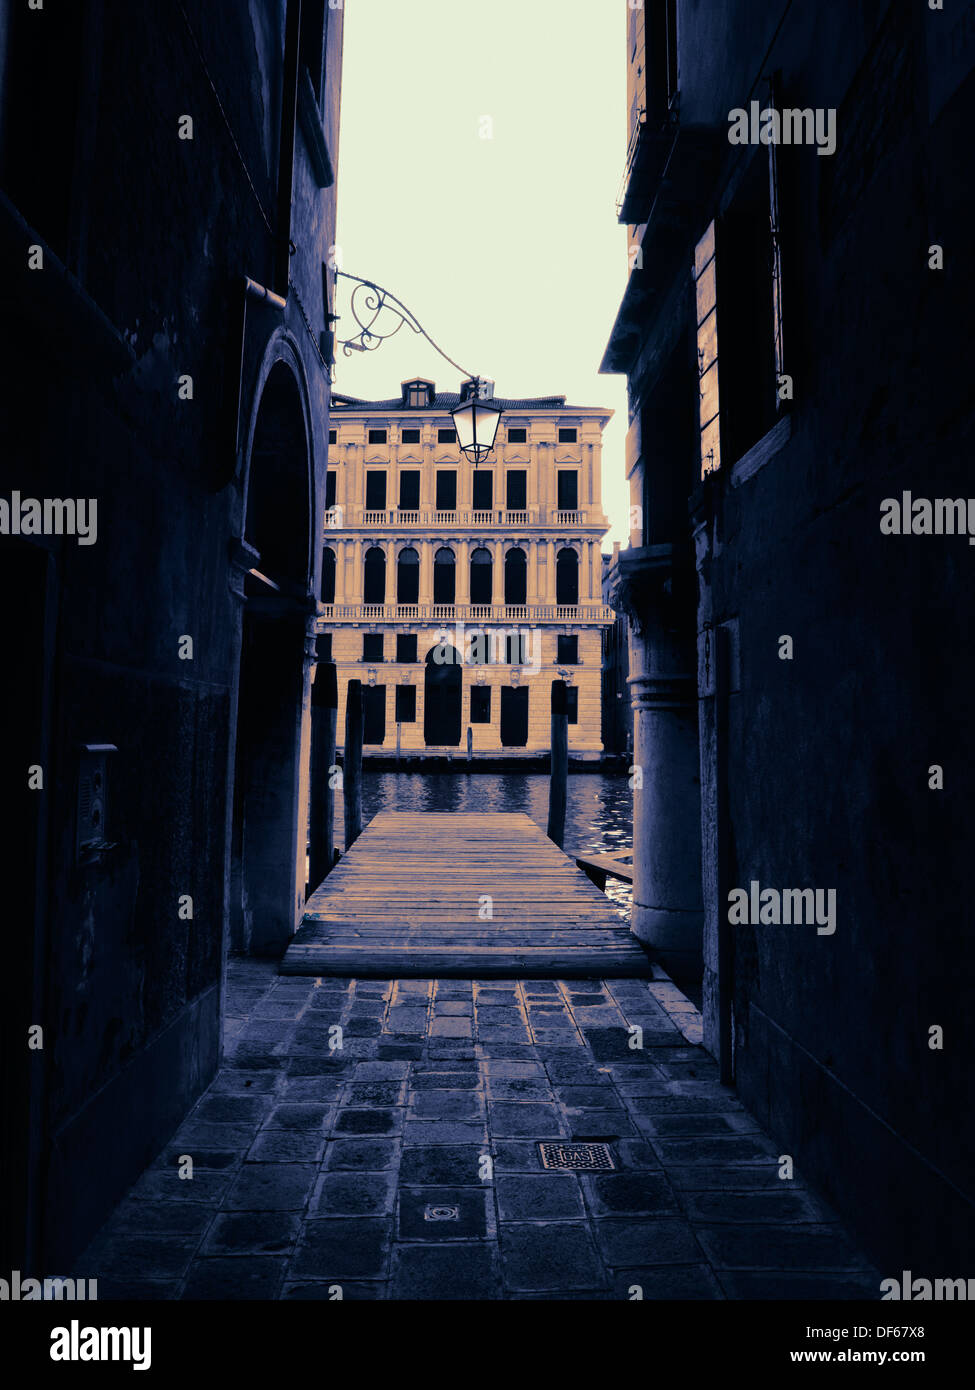 Dark narrow passage leading to canal, Venice, Italy Stock Photo